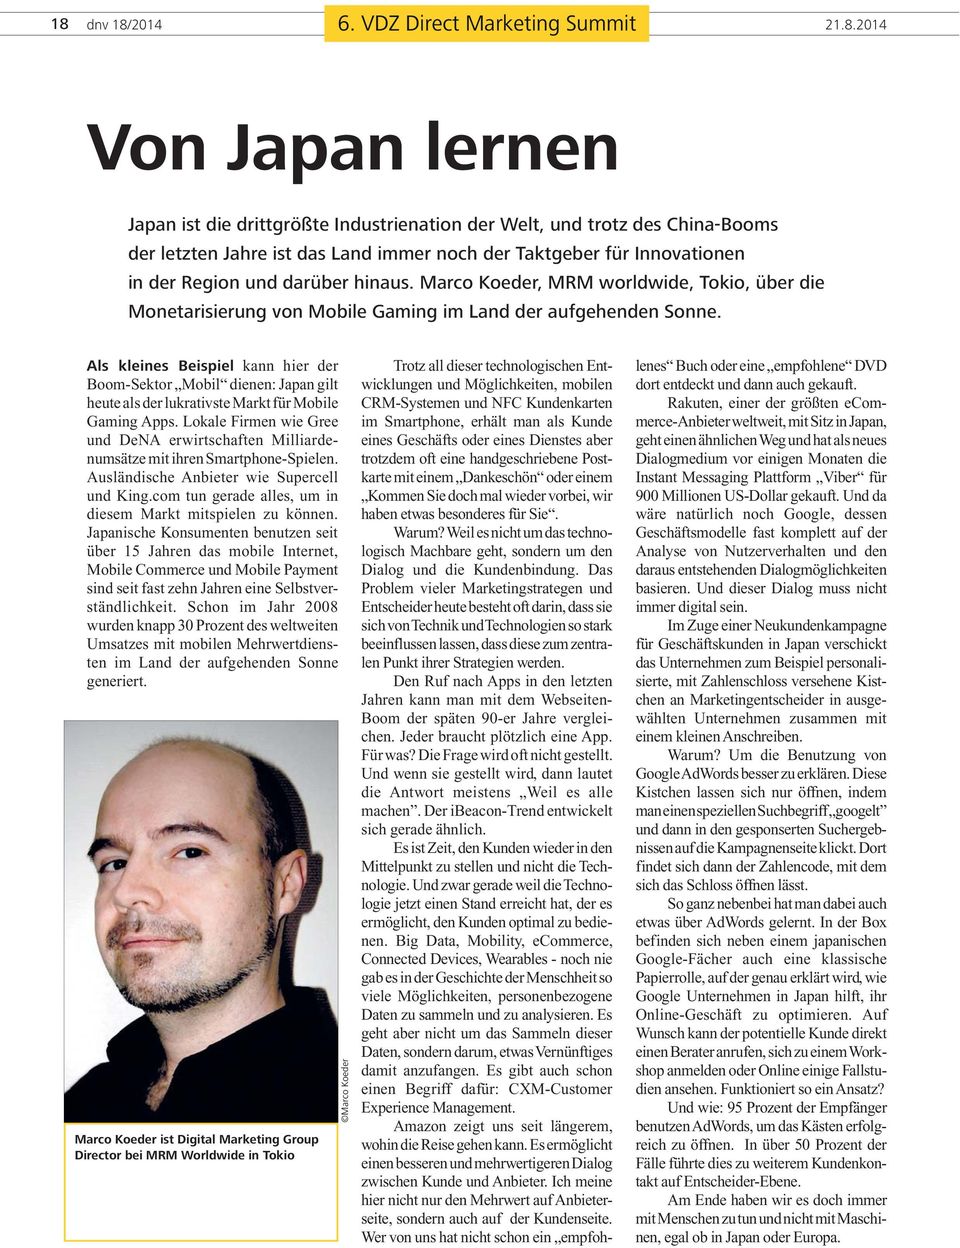 der Region und darüber hinaus. Marco Koeder, MRM worldwide, Tokio, über die Monetarisierung von Mobile Gaming im Land der aufgehenden Sonne.